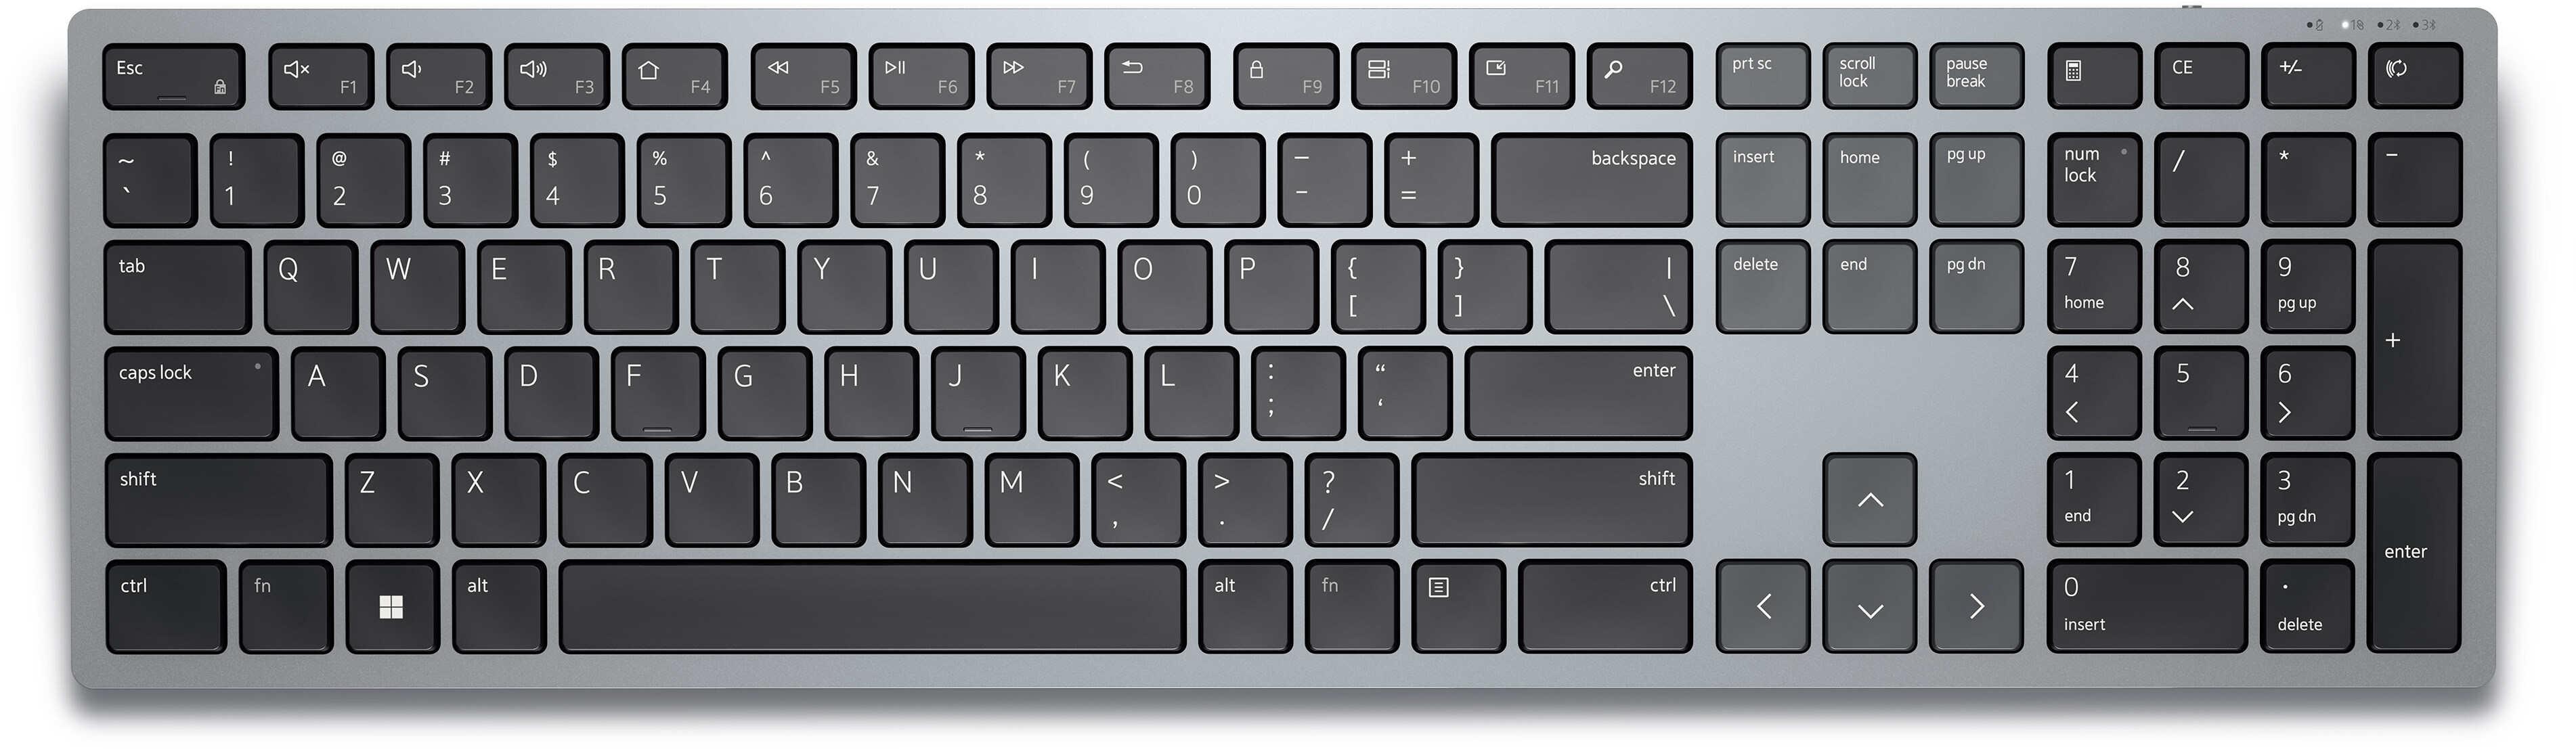 Diakritisch democratische Partij Alternatief voorstel Dell draadloos toetsenbord voor meerdere apparaten - KB700 - Duits (QWERTZ)  | Dell Nederland